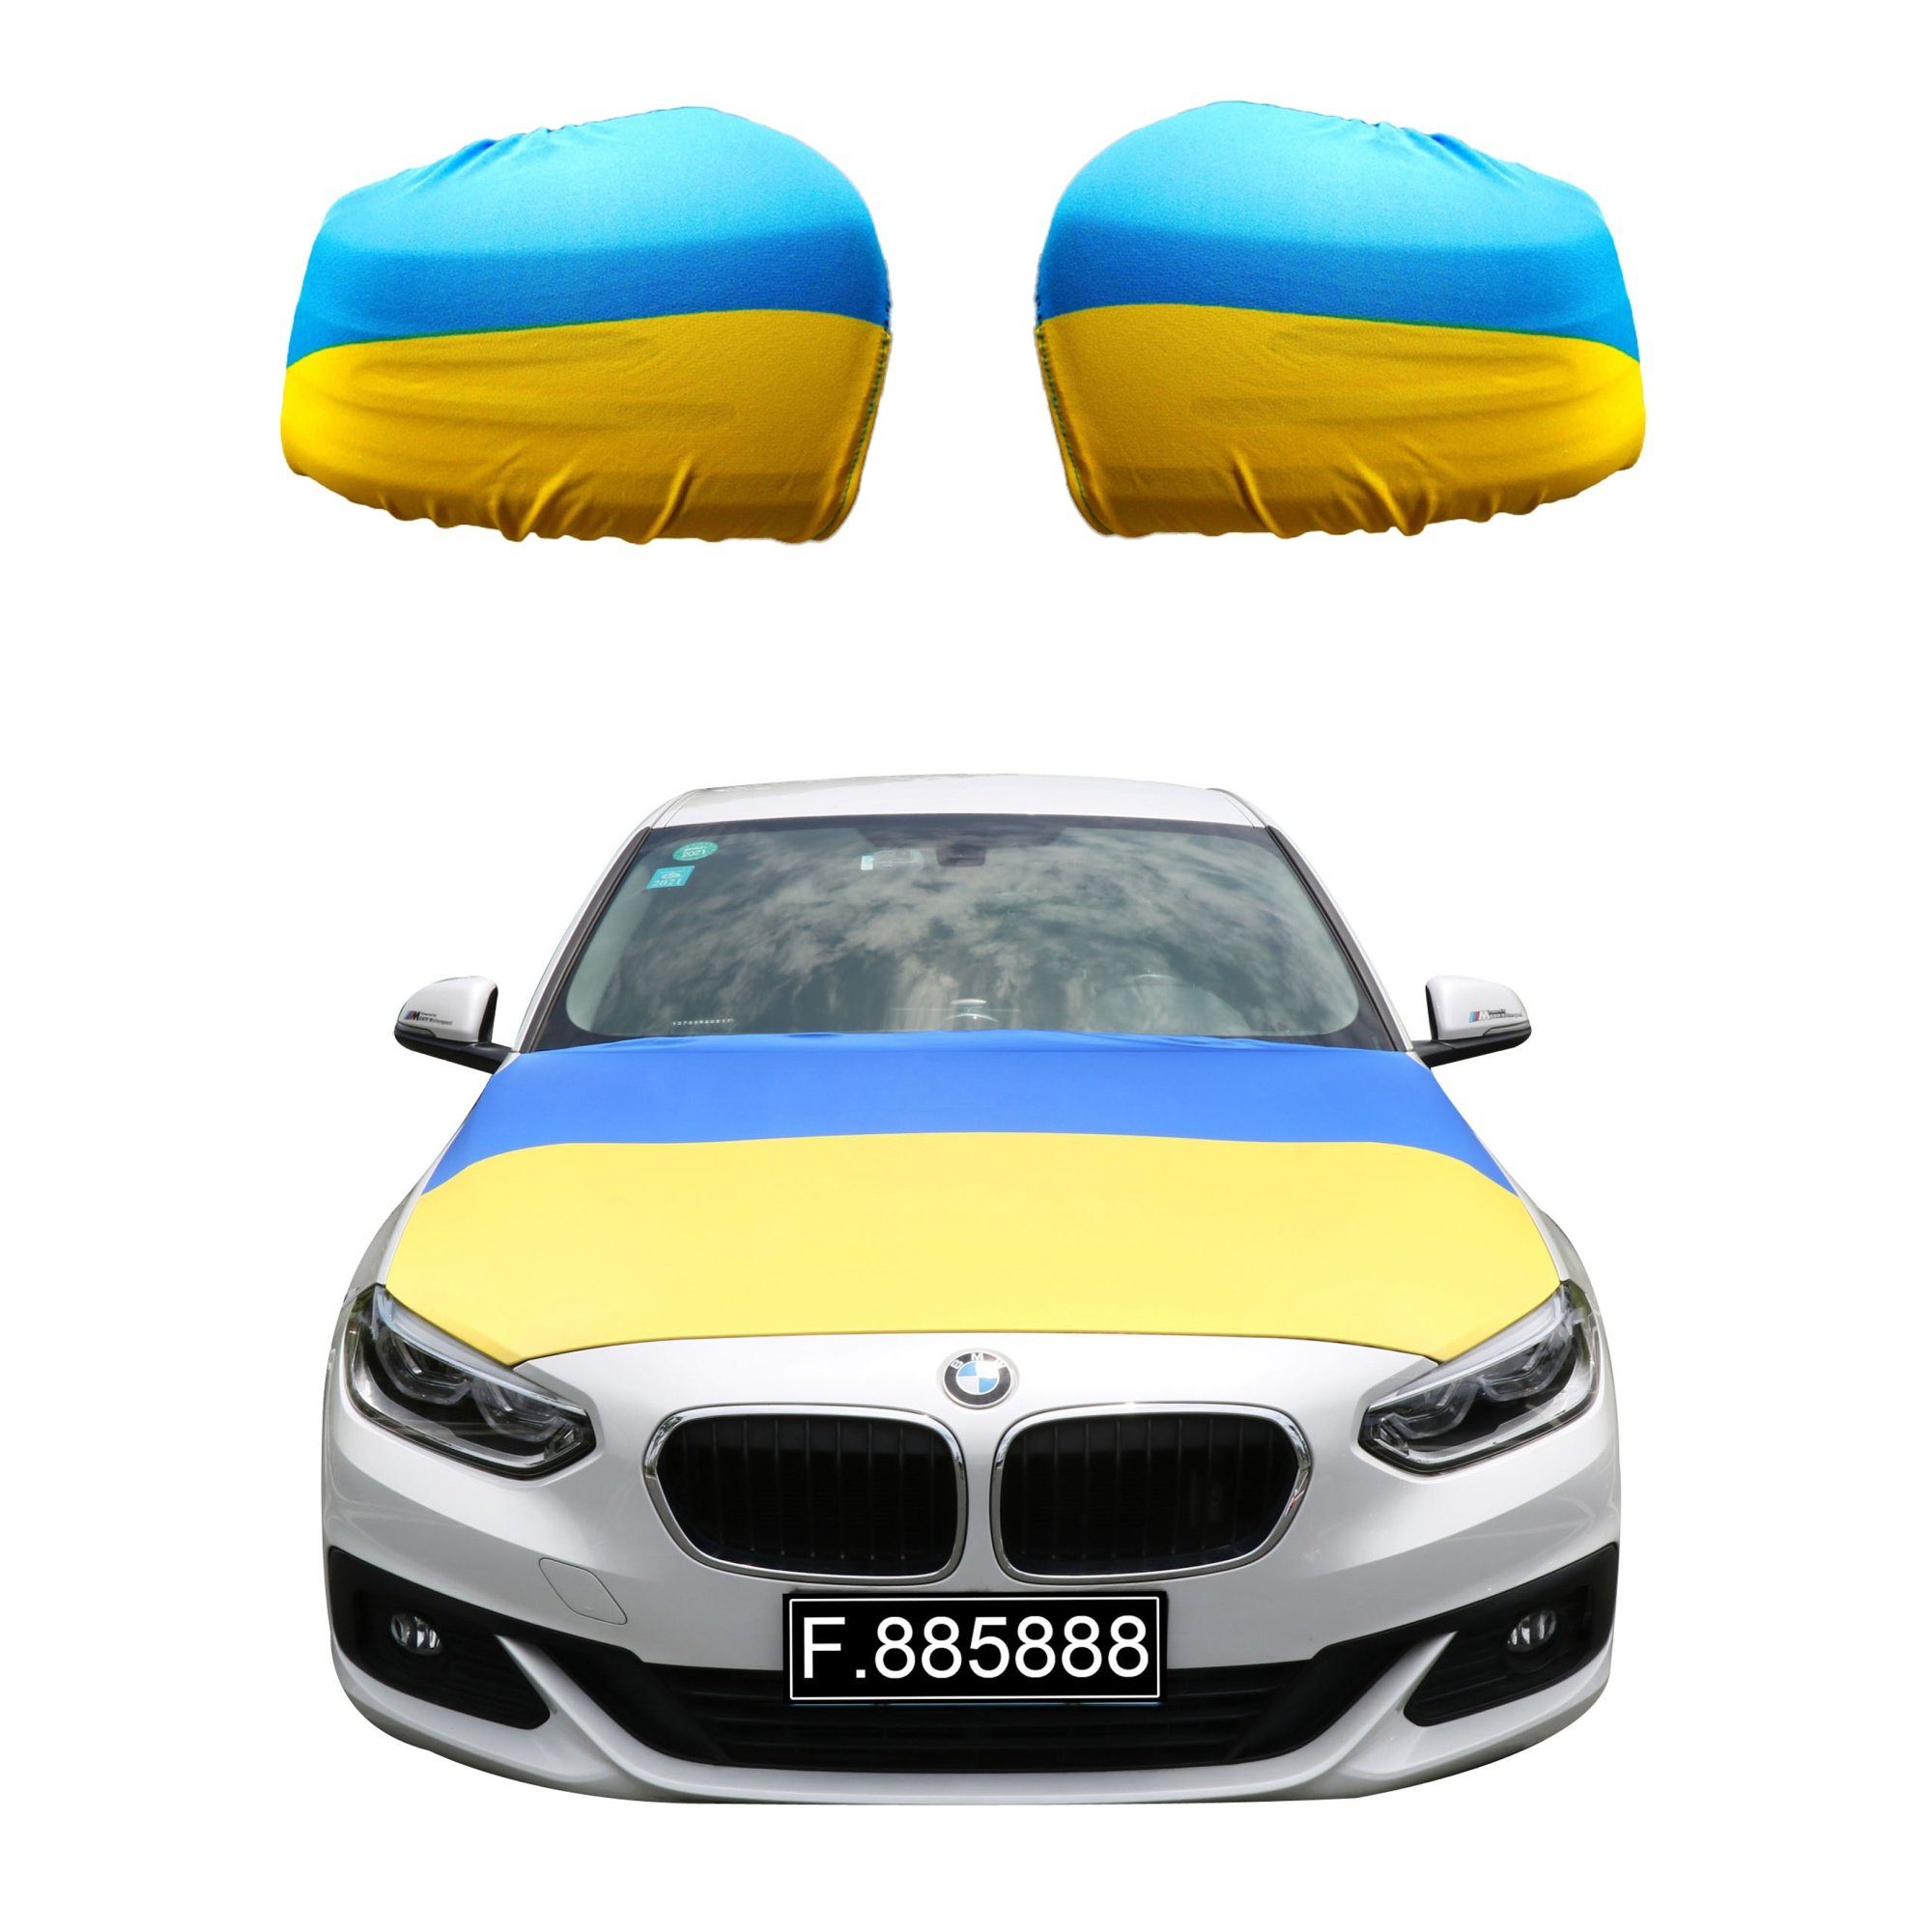 Sonia Originelli Fahne Fanset "Ukraine" Ukrain Motorhaube Außenspiegel Flagge, für alle gängigen PKW Modelle, Motorhauben Flagge: ca. 115 x 150cm